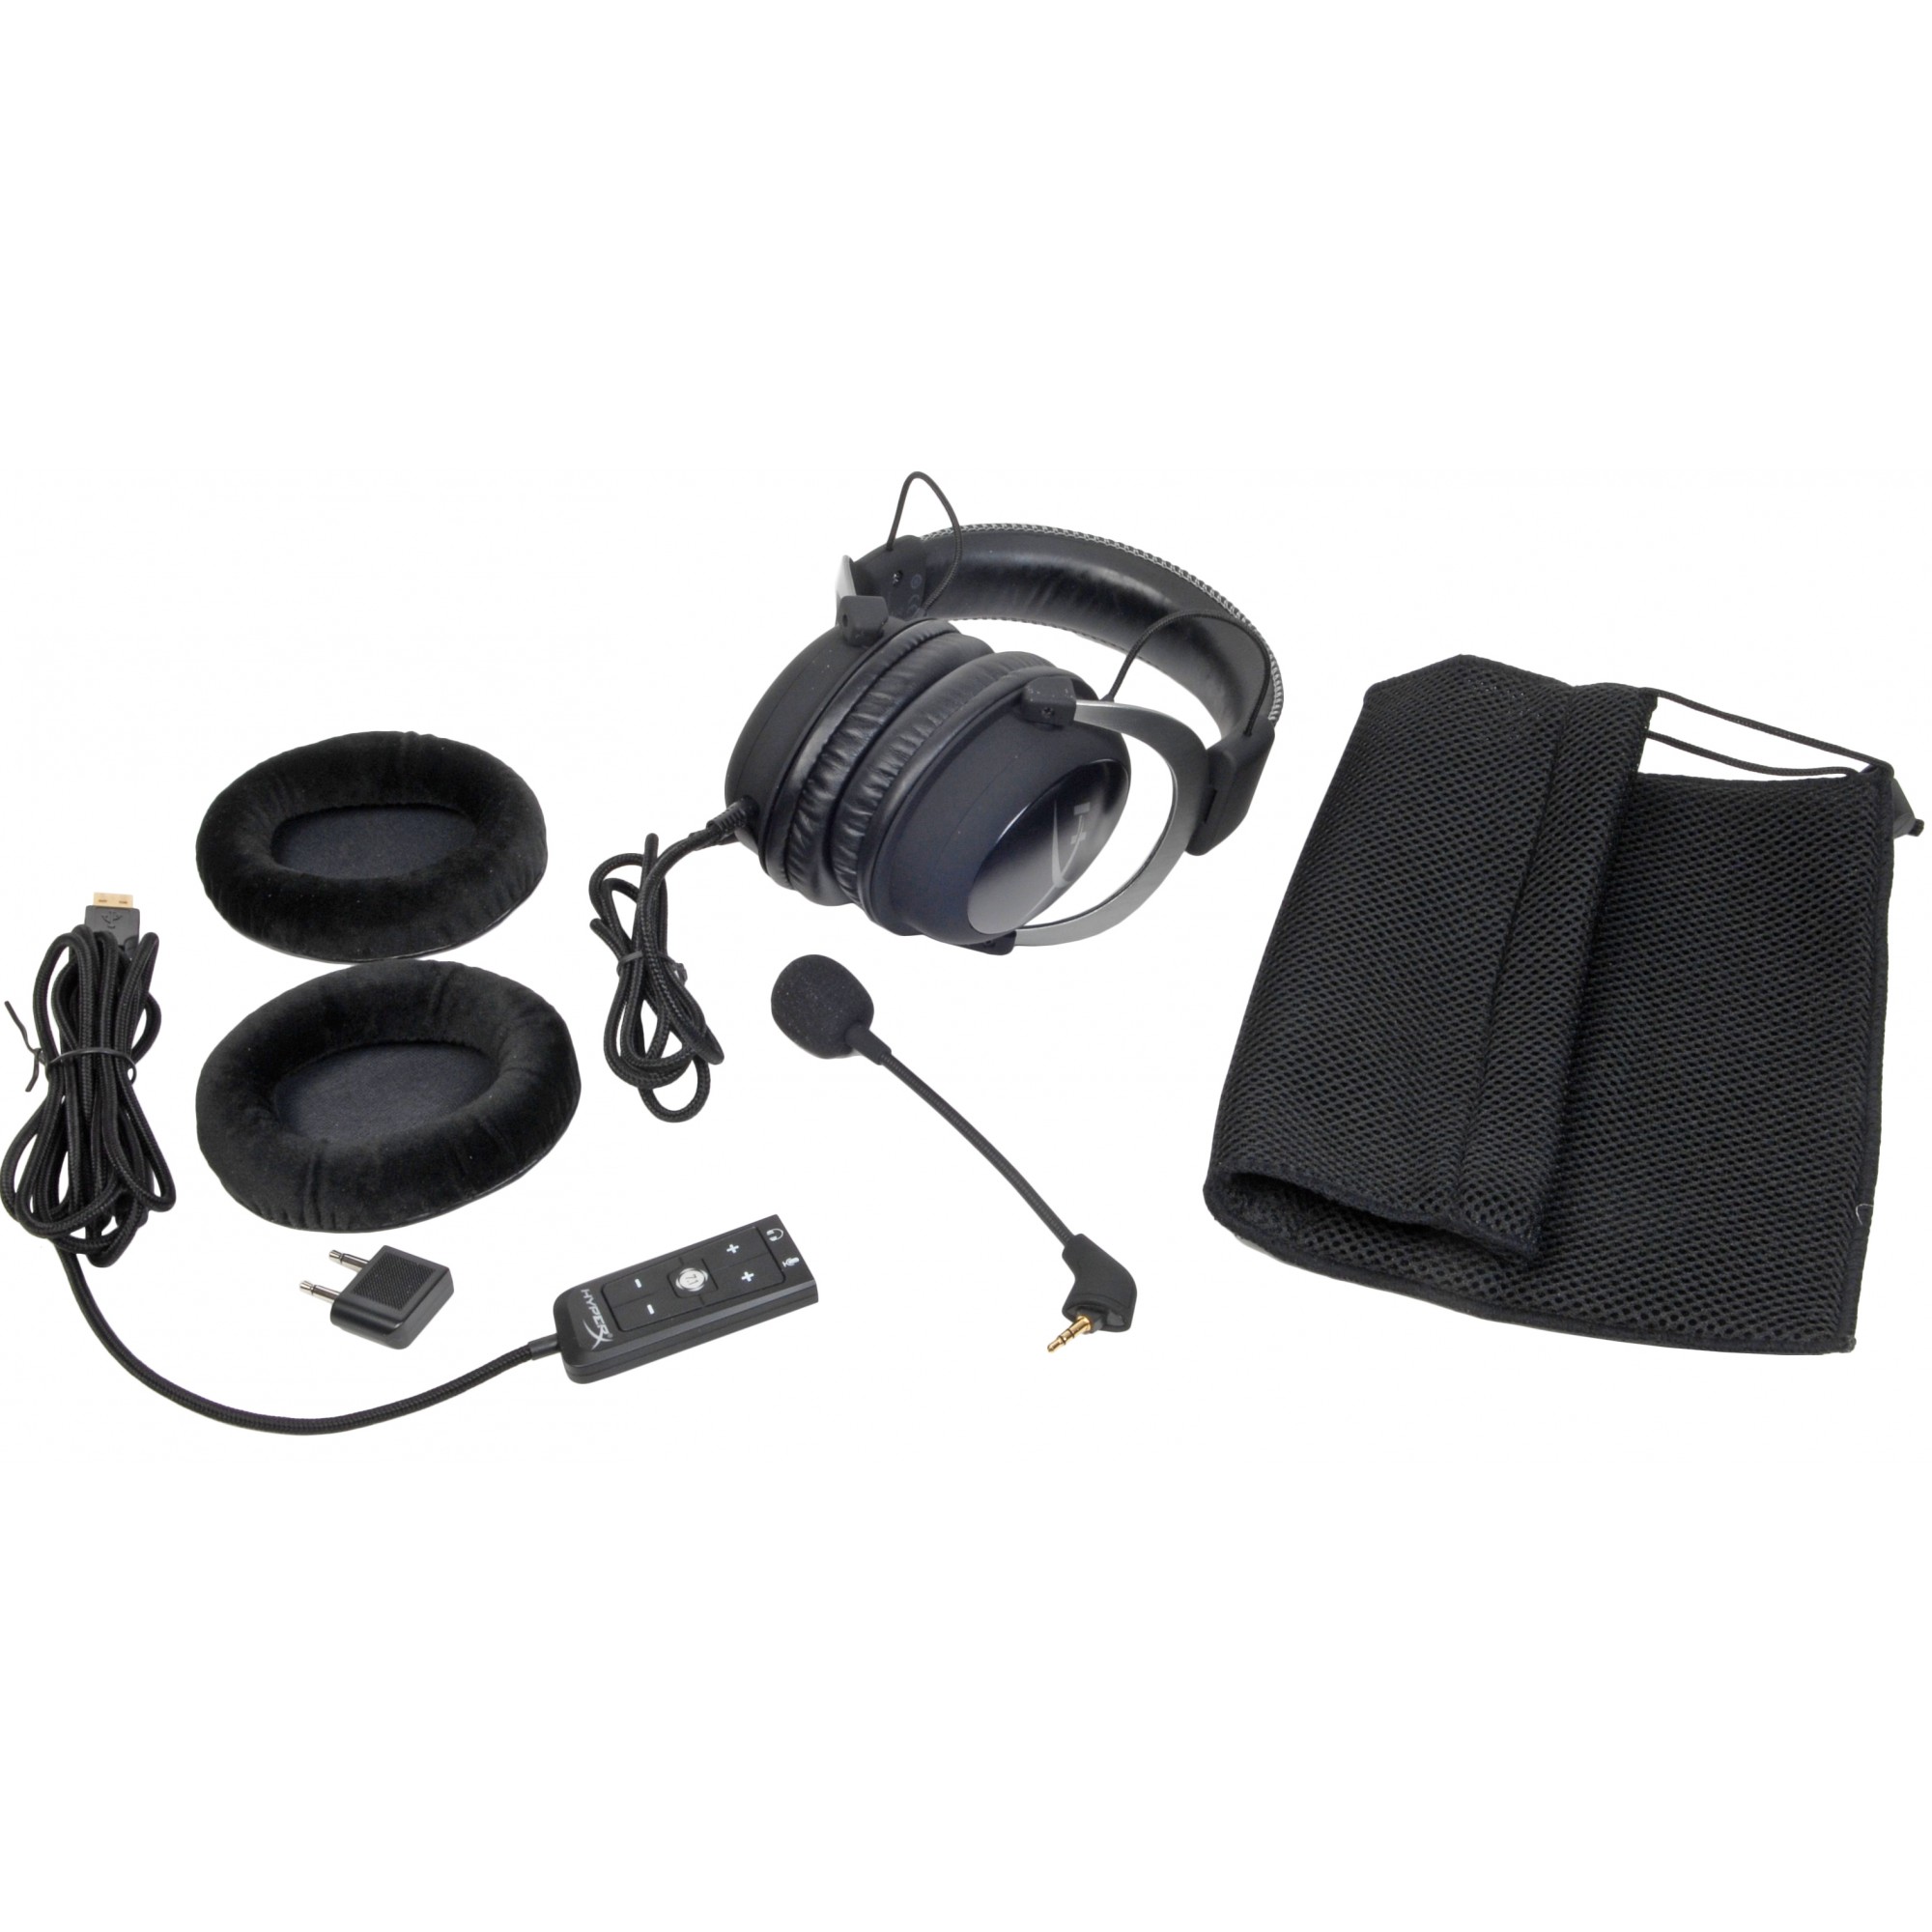 NEW KINGSTON HyperX Cloud II Gaming Headset 7.1 Virtual Surround Sound Gun  Metal 780746765950